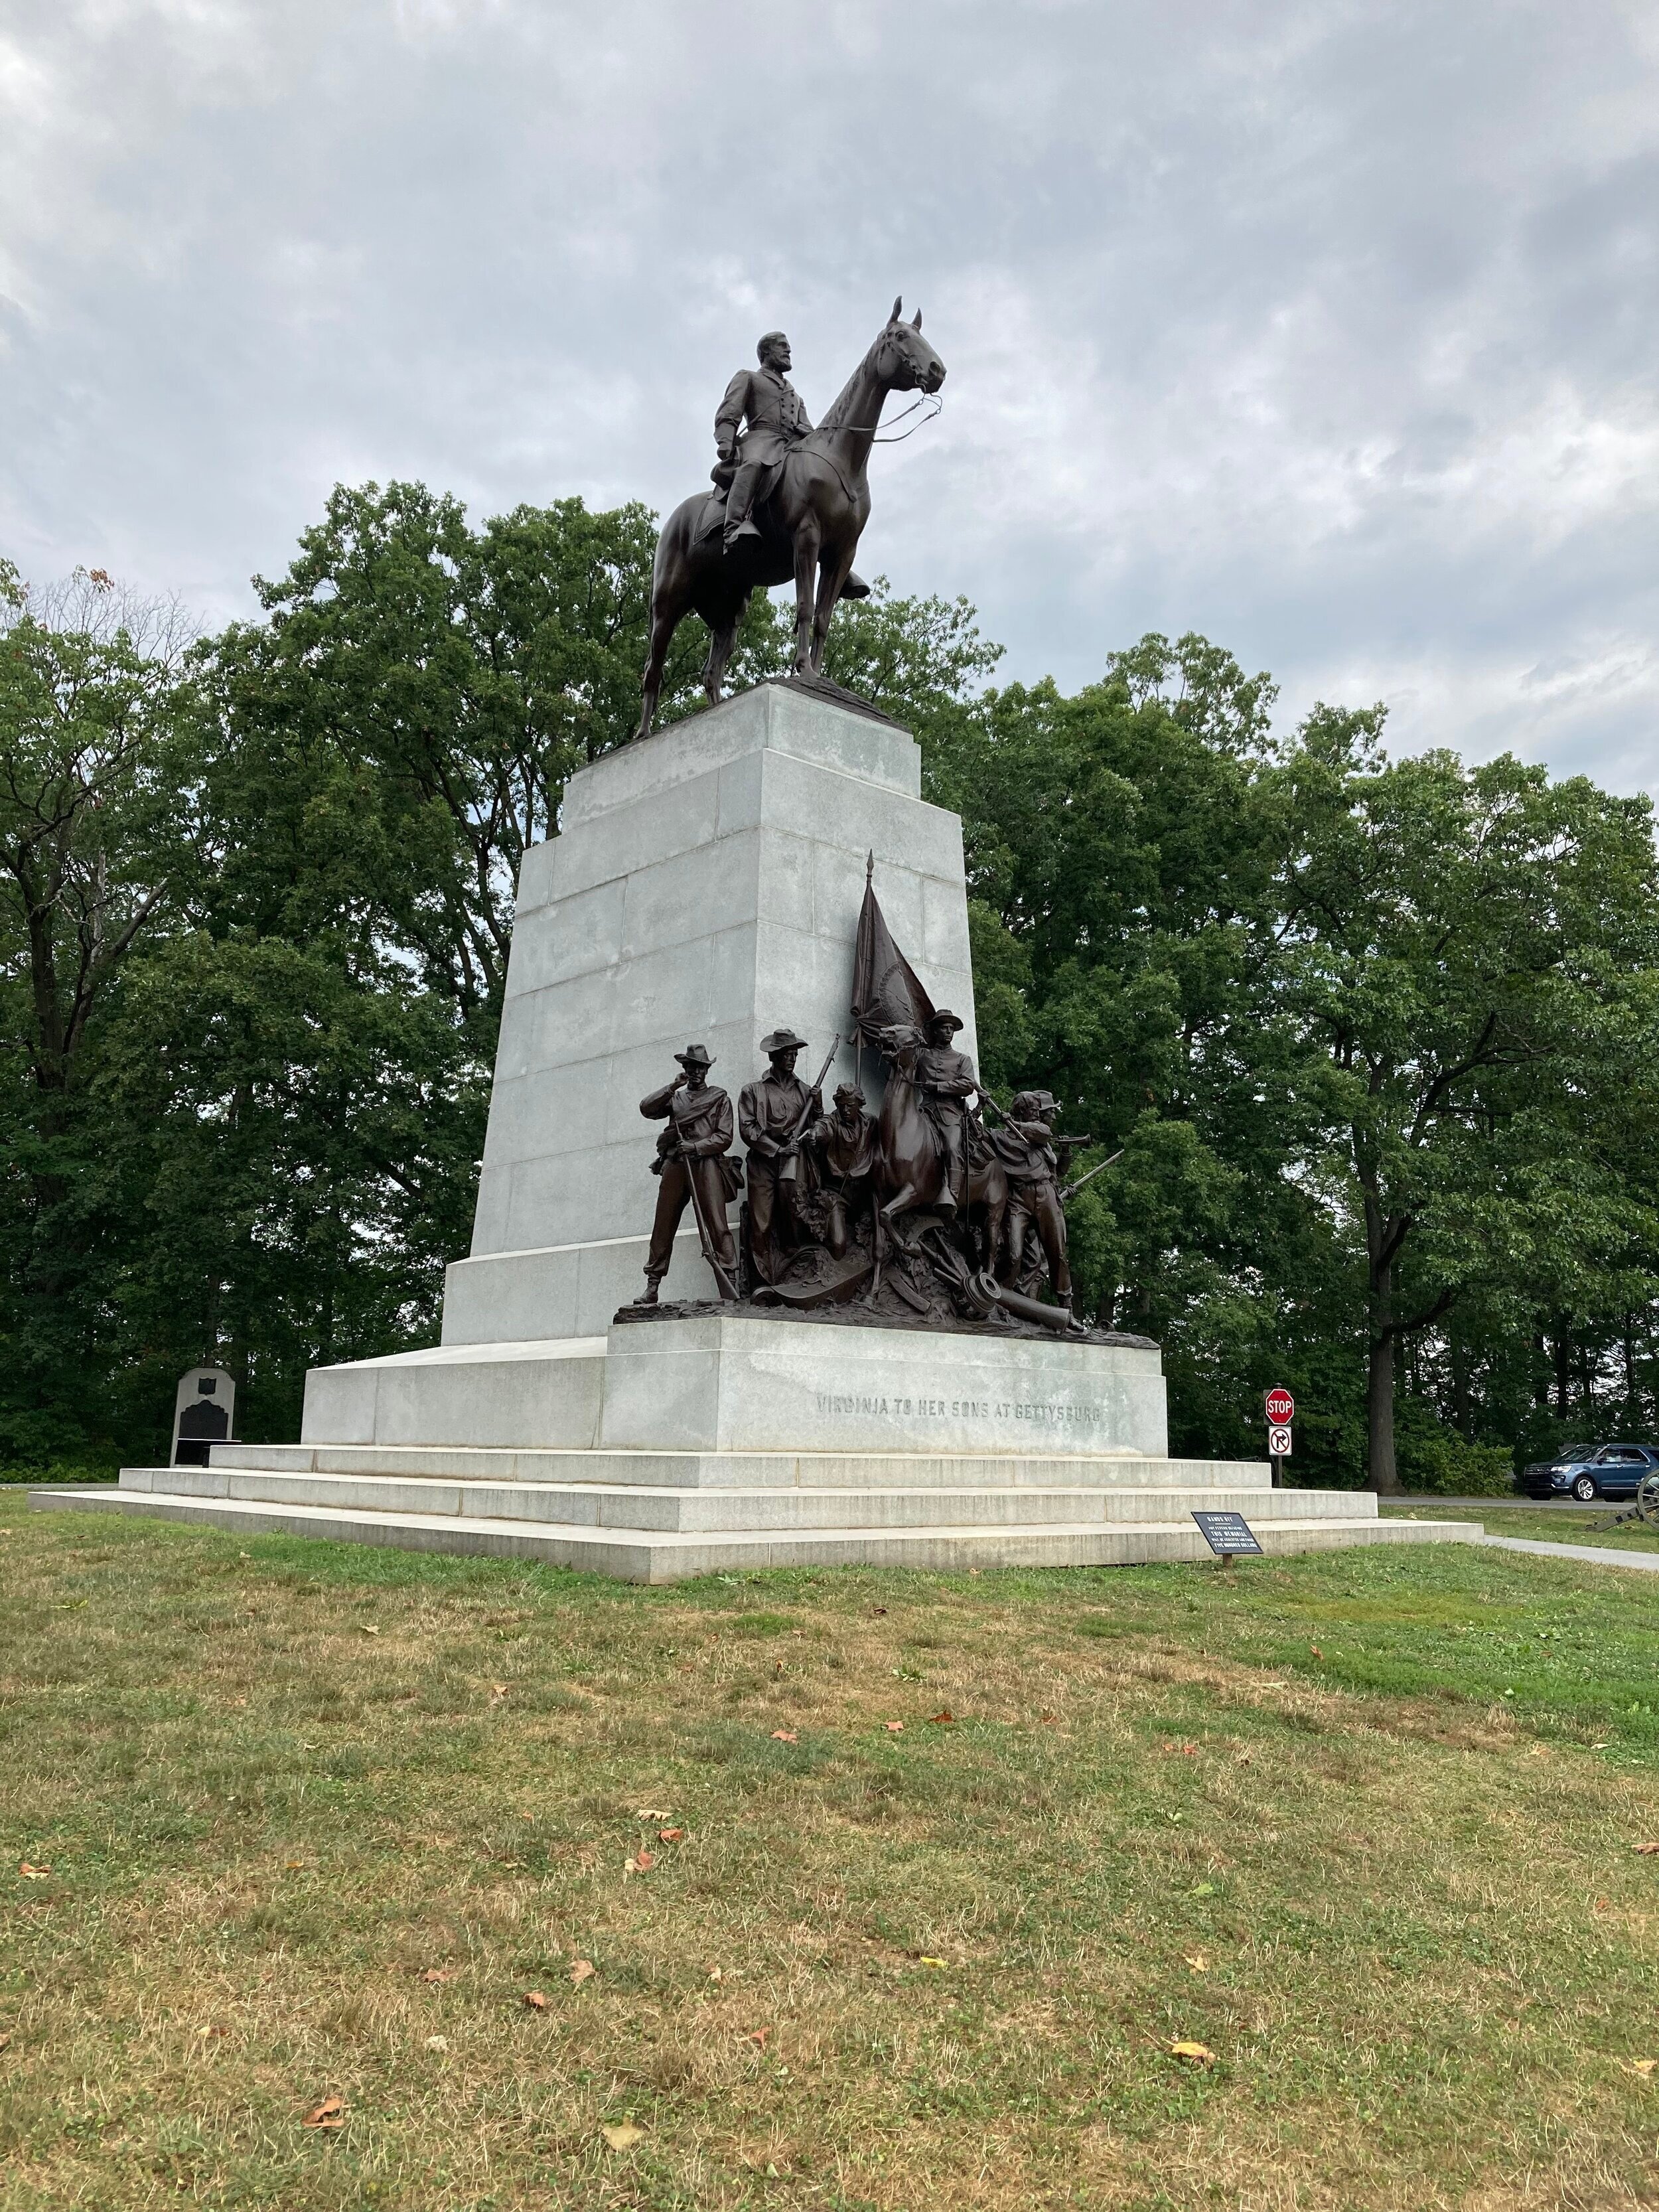 Robert E Lee Memorial at Gettysburg